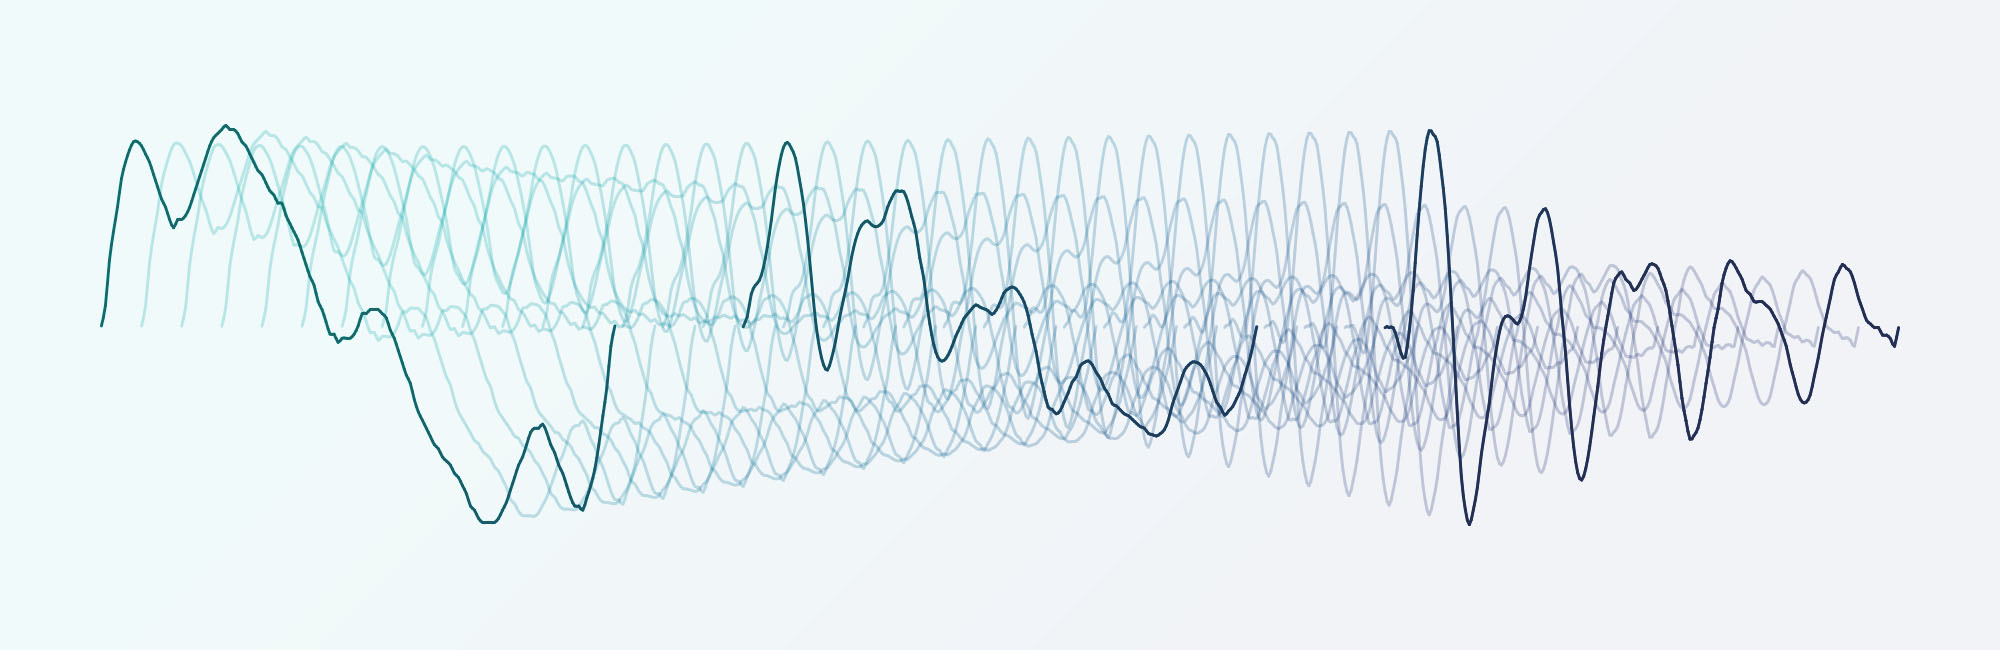 El poder de la tabla de ondas (síntesis Wavetable), modulando sin problemas a través de la serie de formas de onda contenidas en una tabla